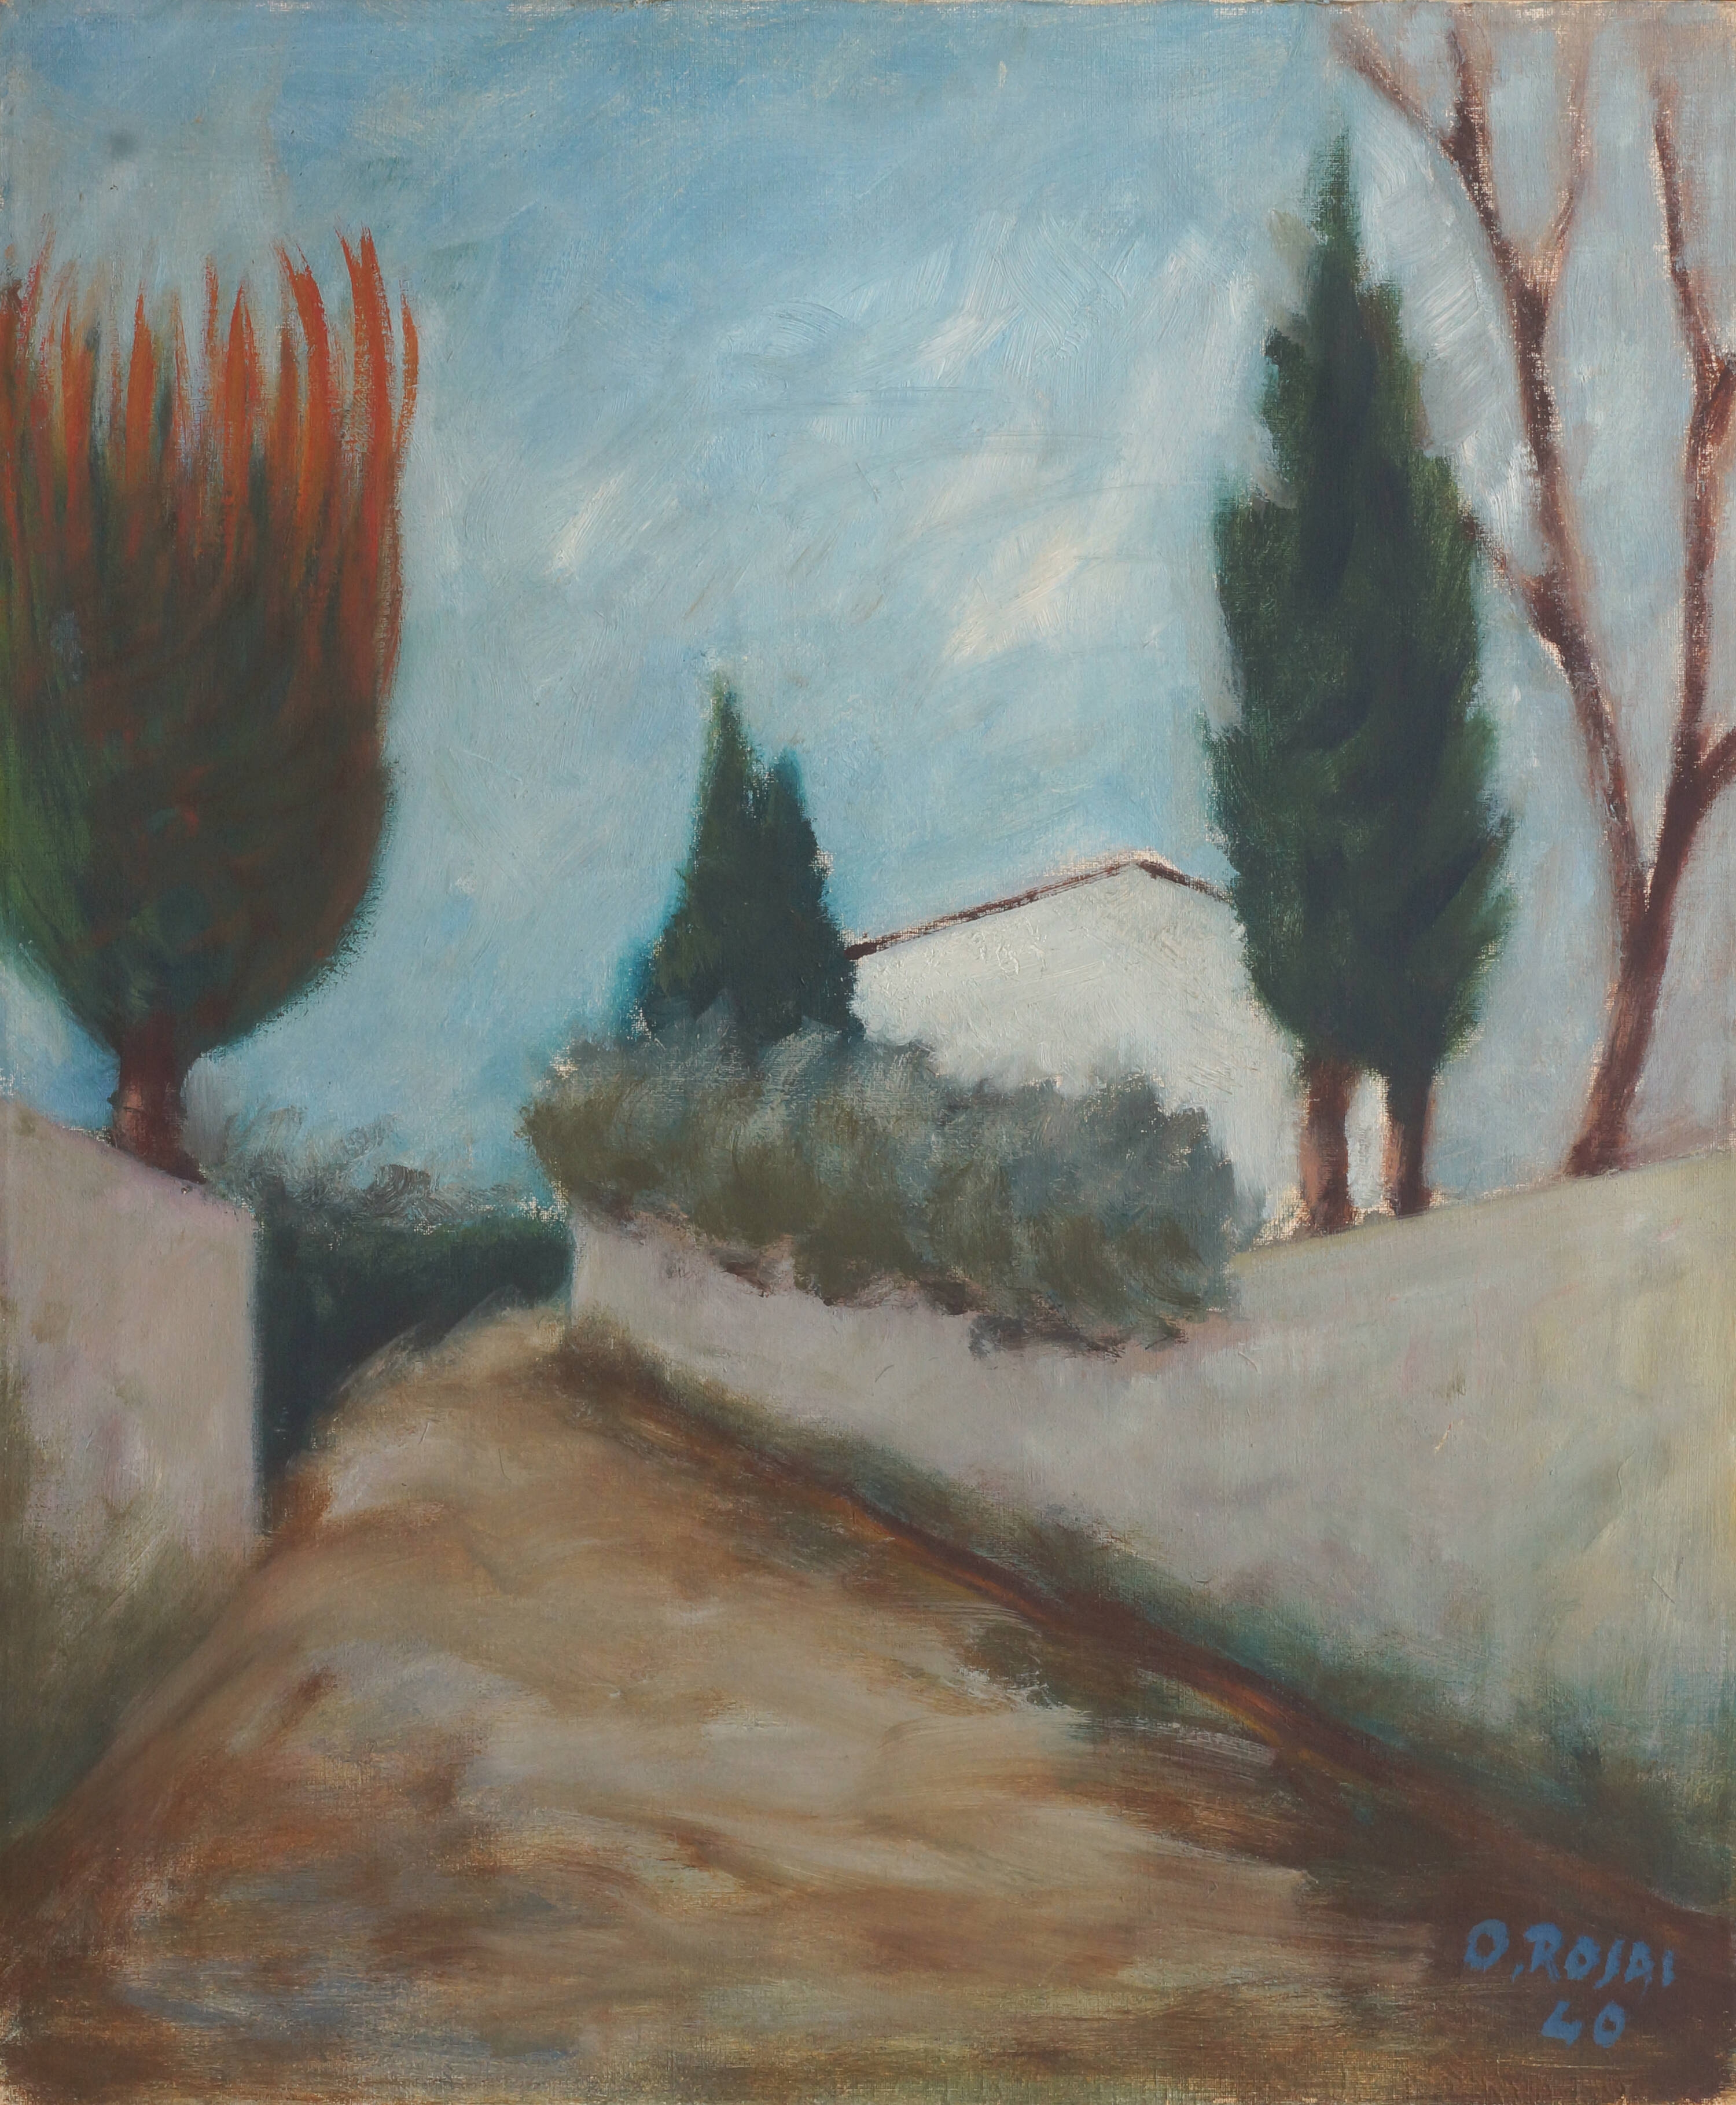 Paesaggio by Ottone Rosai, 1940